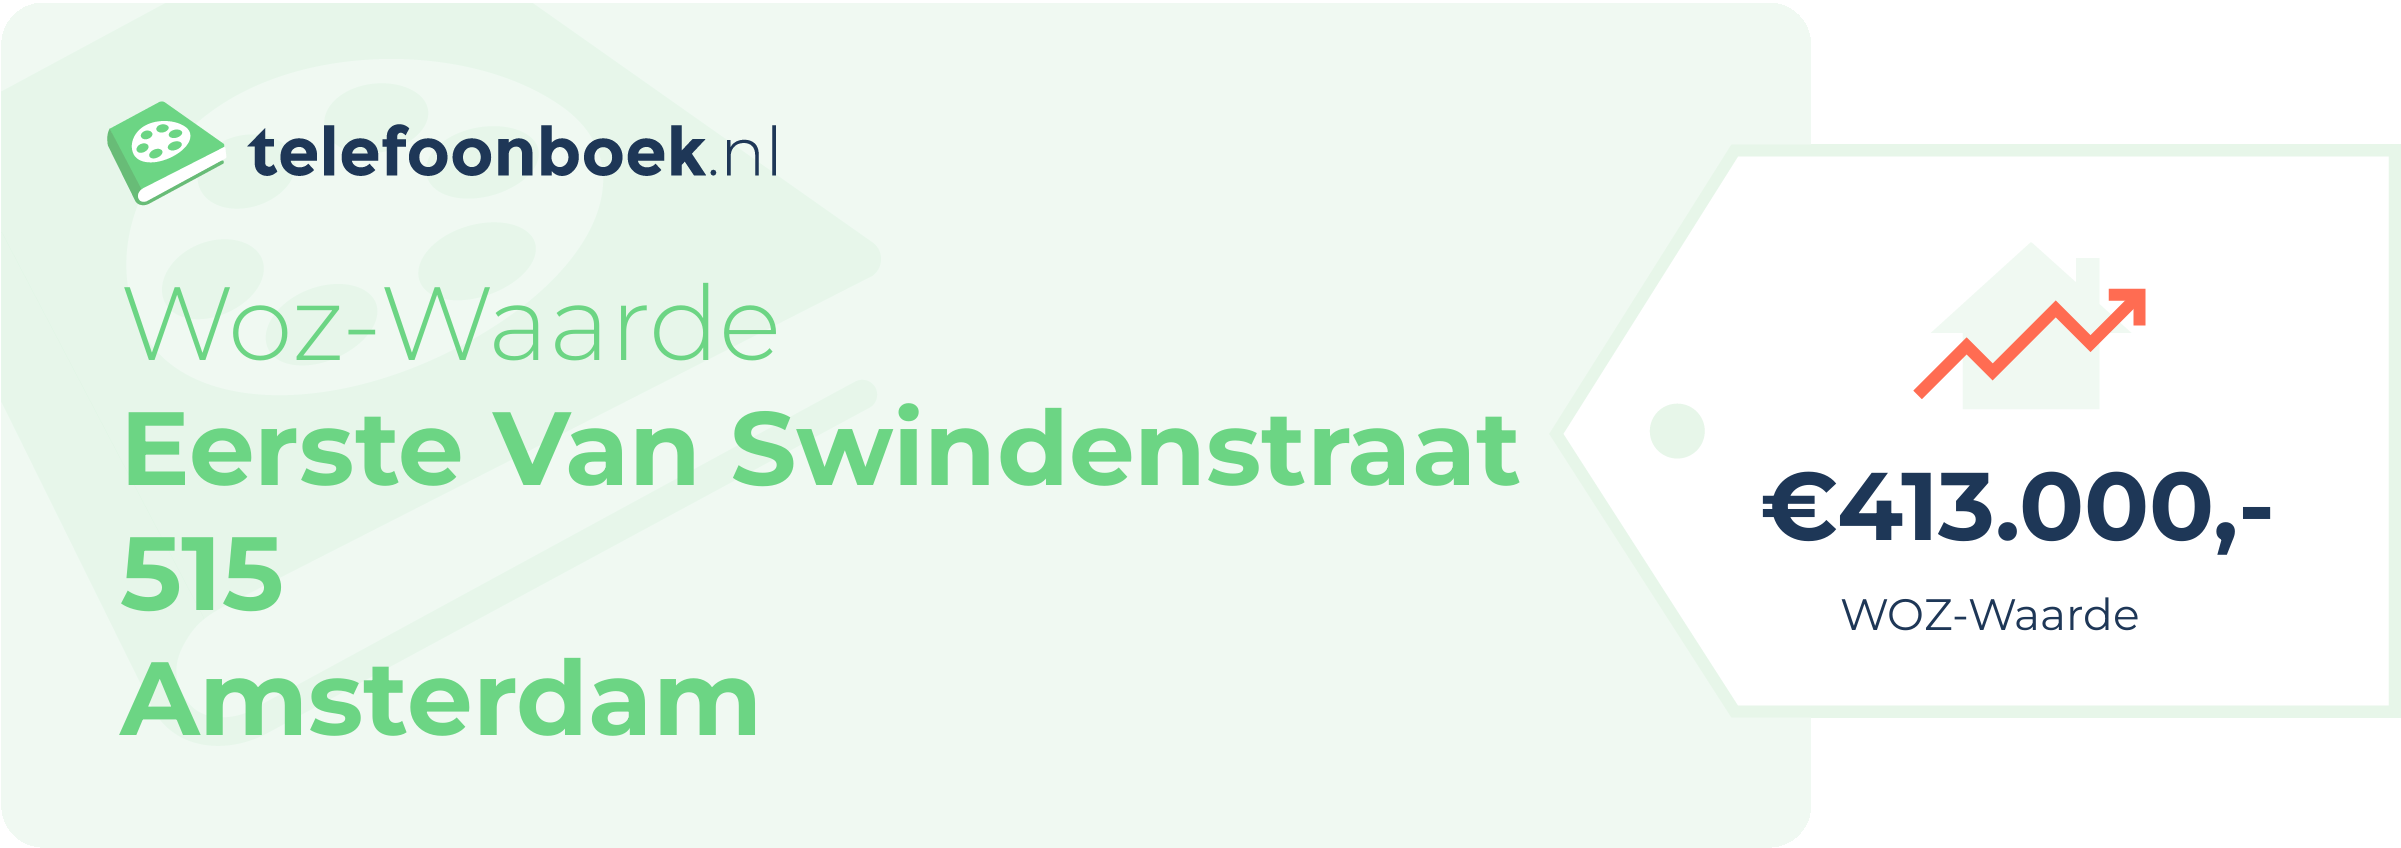 WOZ-waarde Eerste Van Swindenstraat 515 Amsterdam